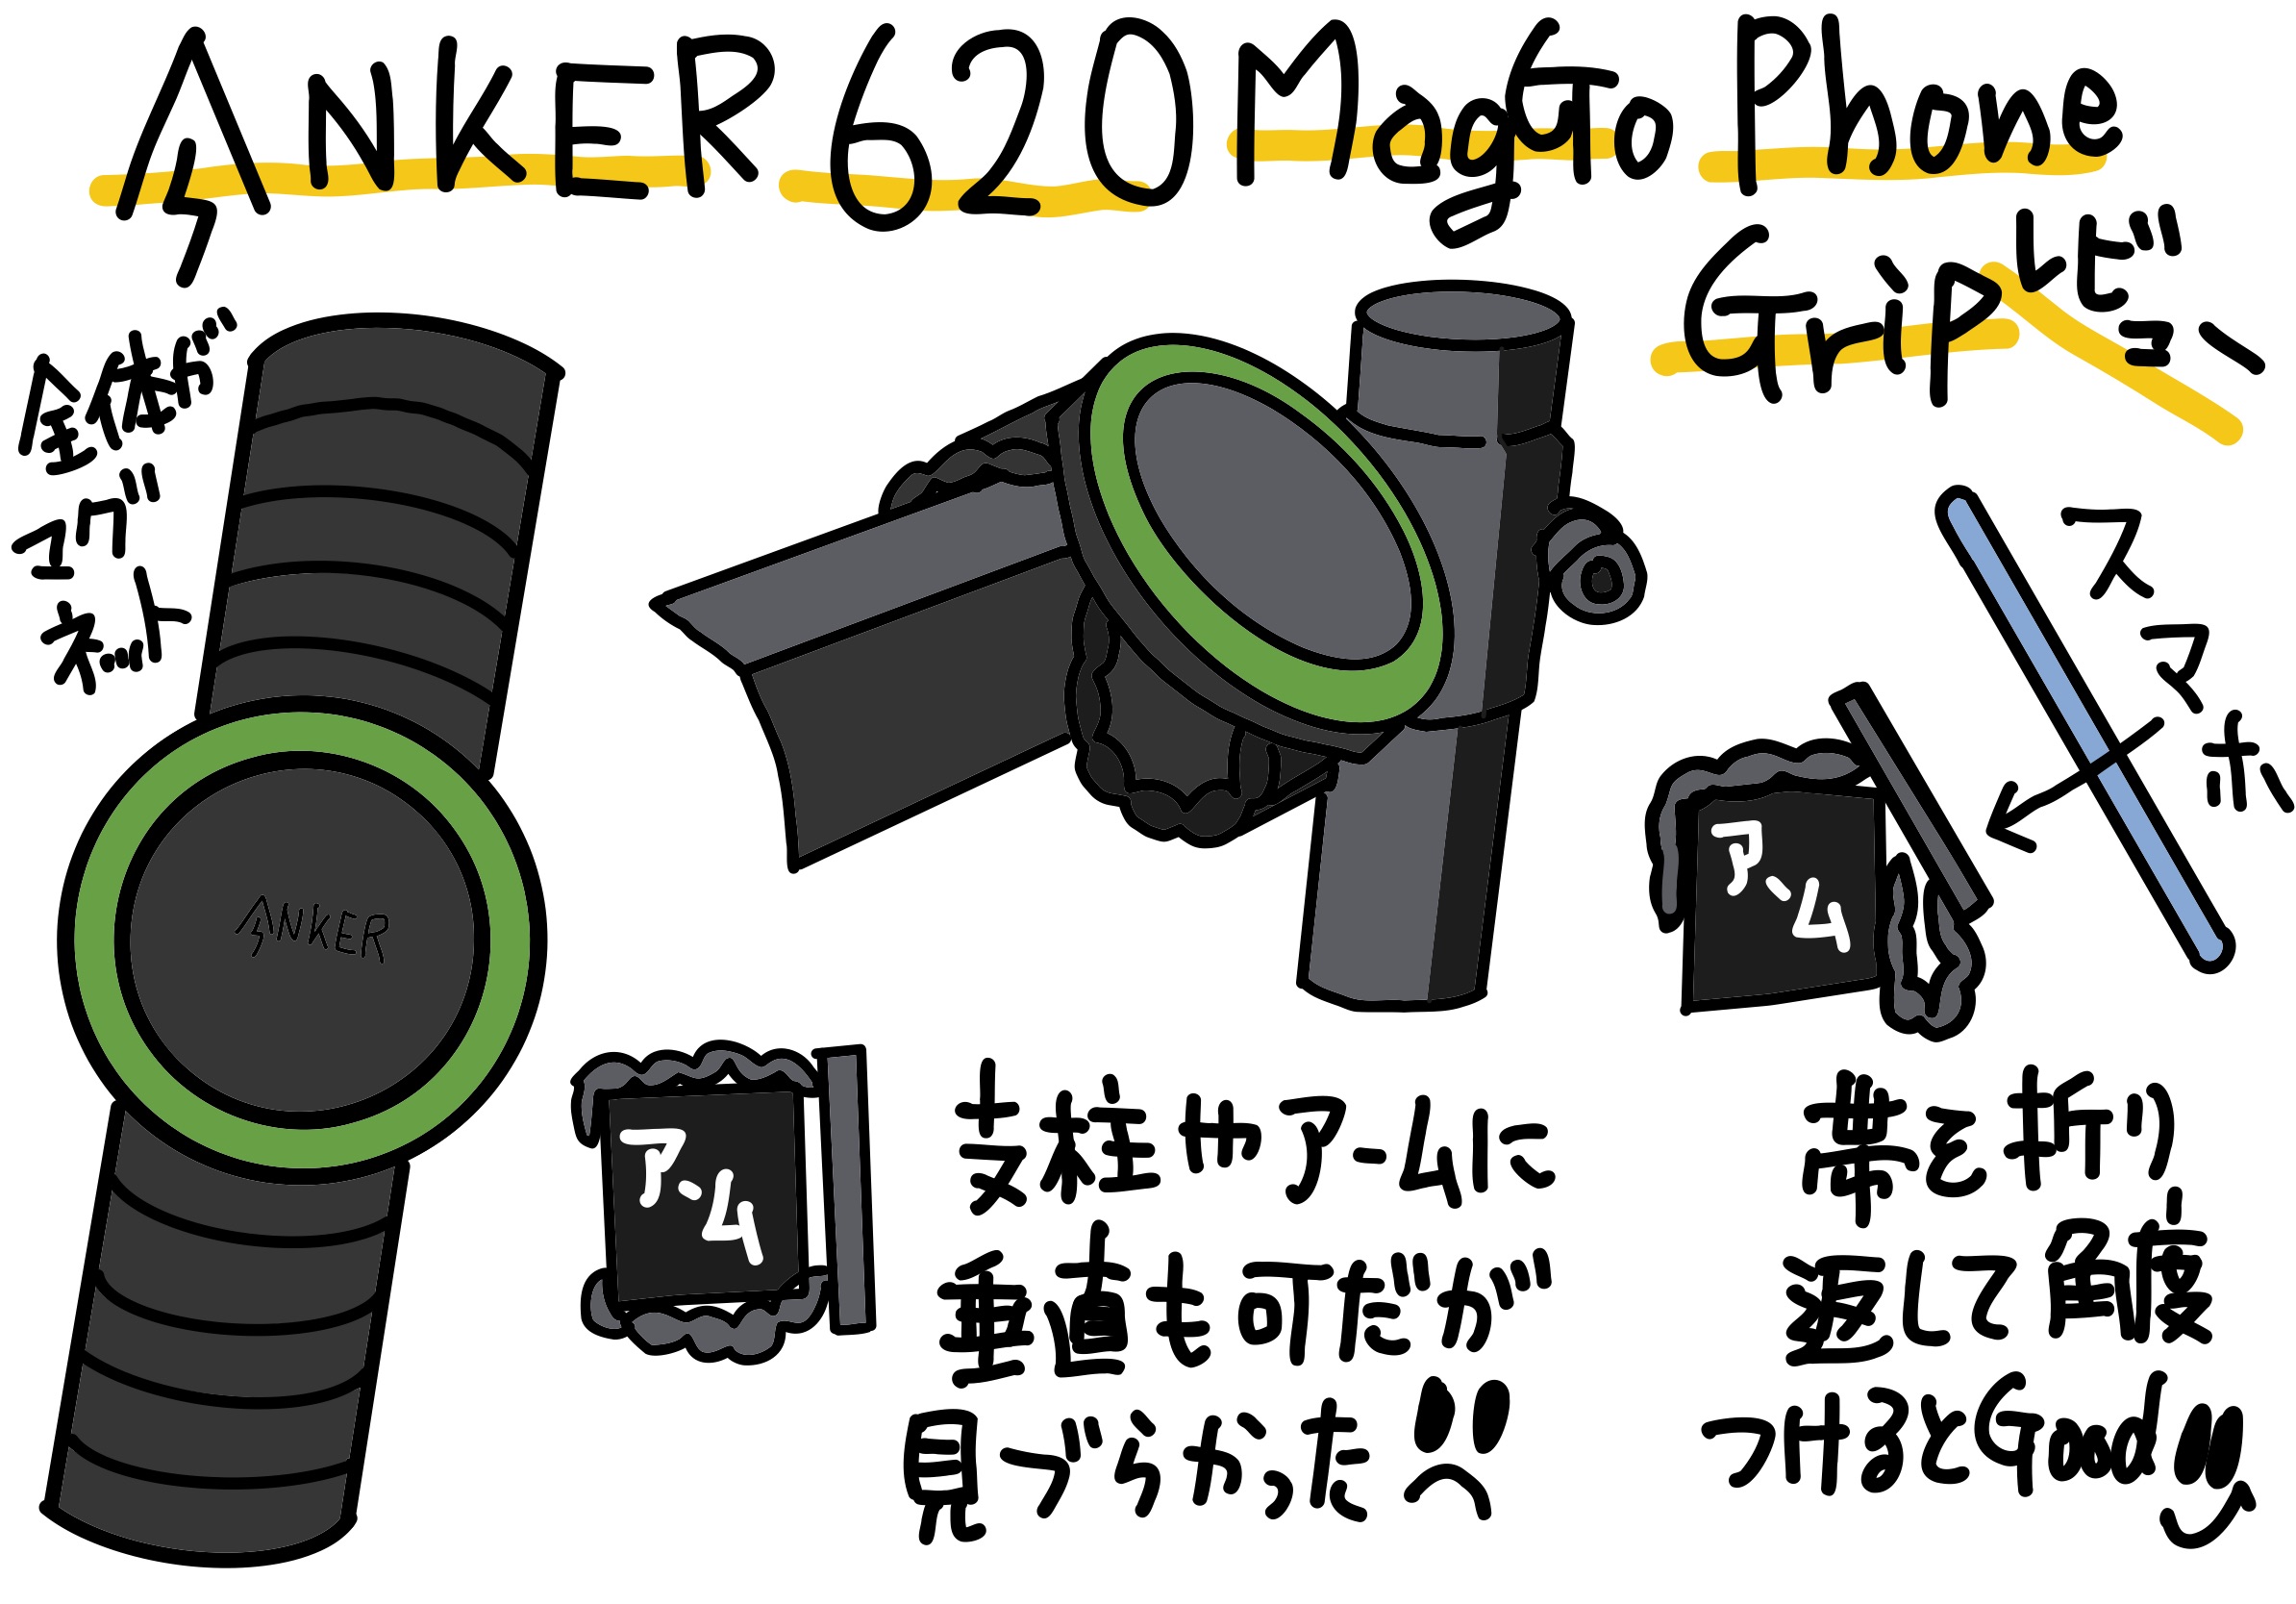 ANKER 620 MagGo Phone Grip を MagSafe 化した Galaxy S24 でモニターアーム固定用に使ってみる